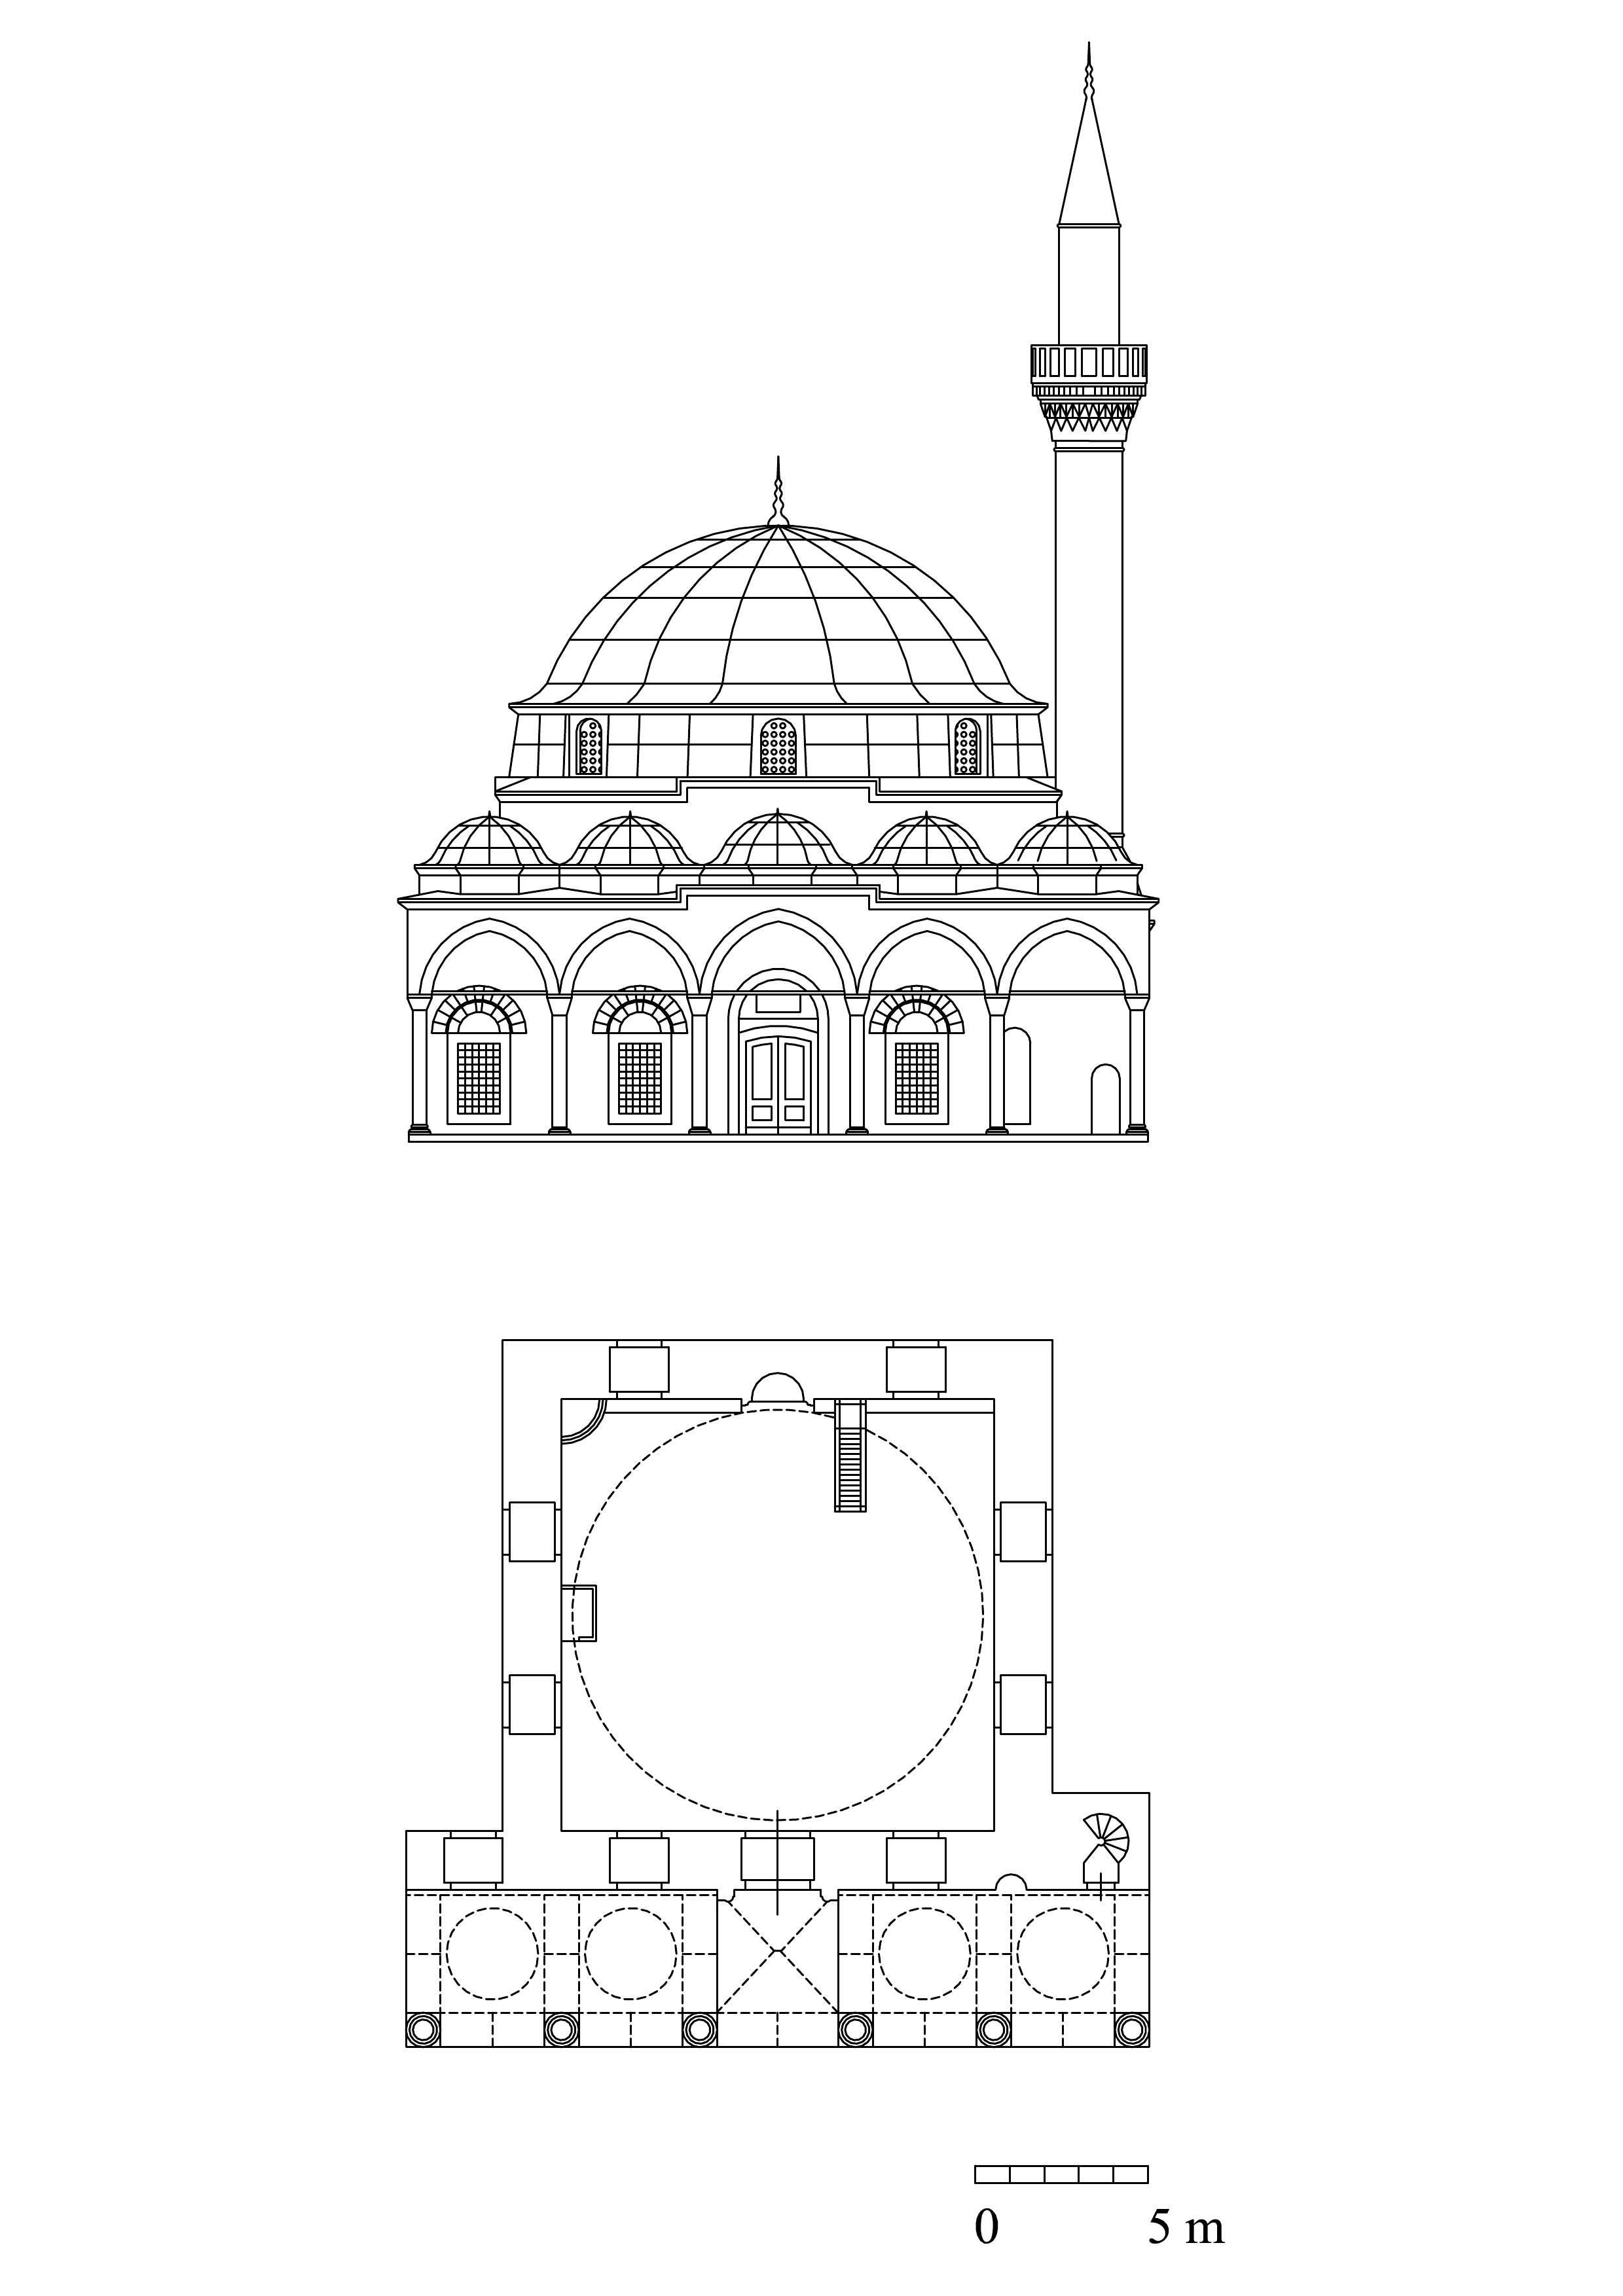 Floor plan and elevation of Firdevs Bey Mosque